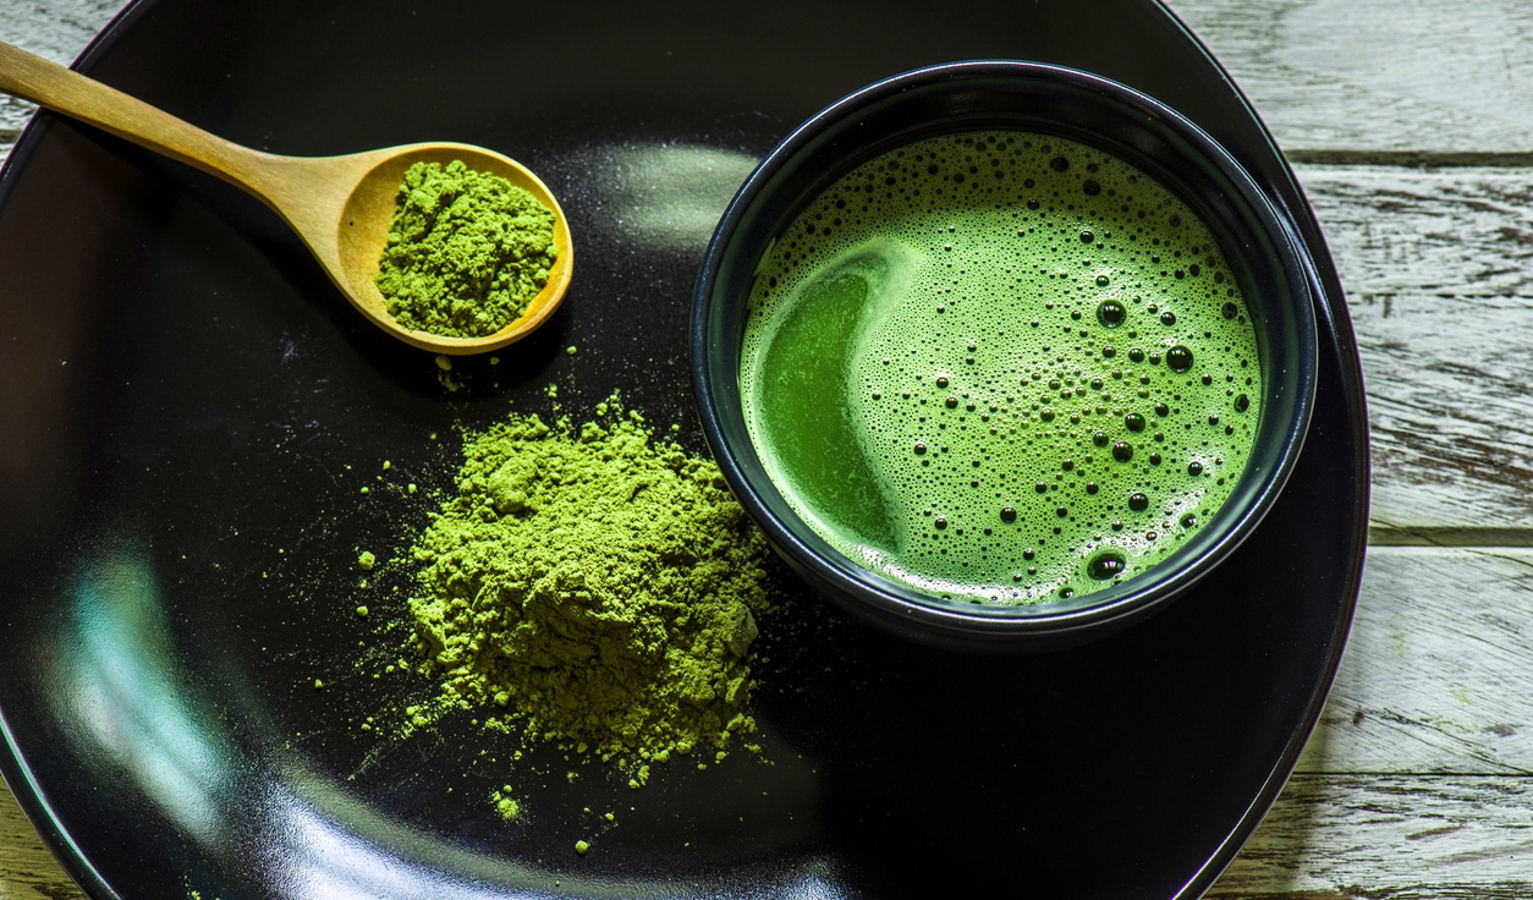 O chá matcha é um tipo de chá verde em pó, conhecido por seu sabor intenso, concentração de antioxidantes e benefícios para a saúde